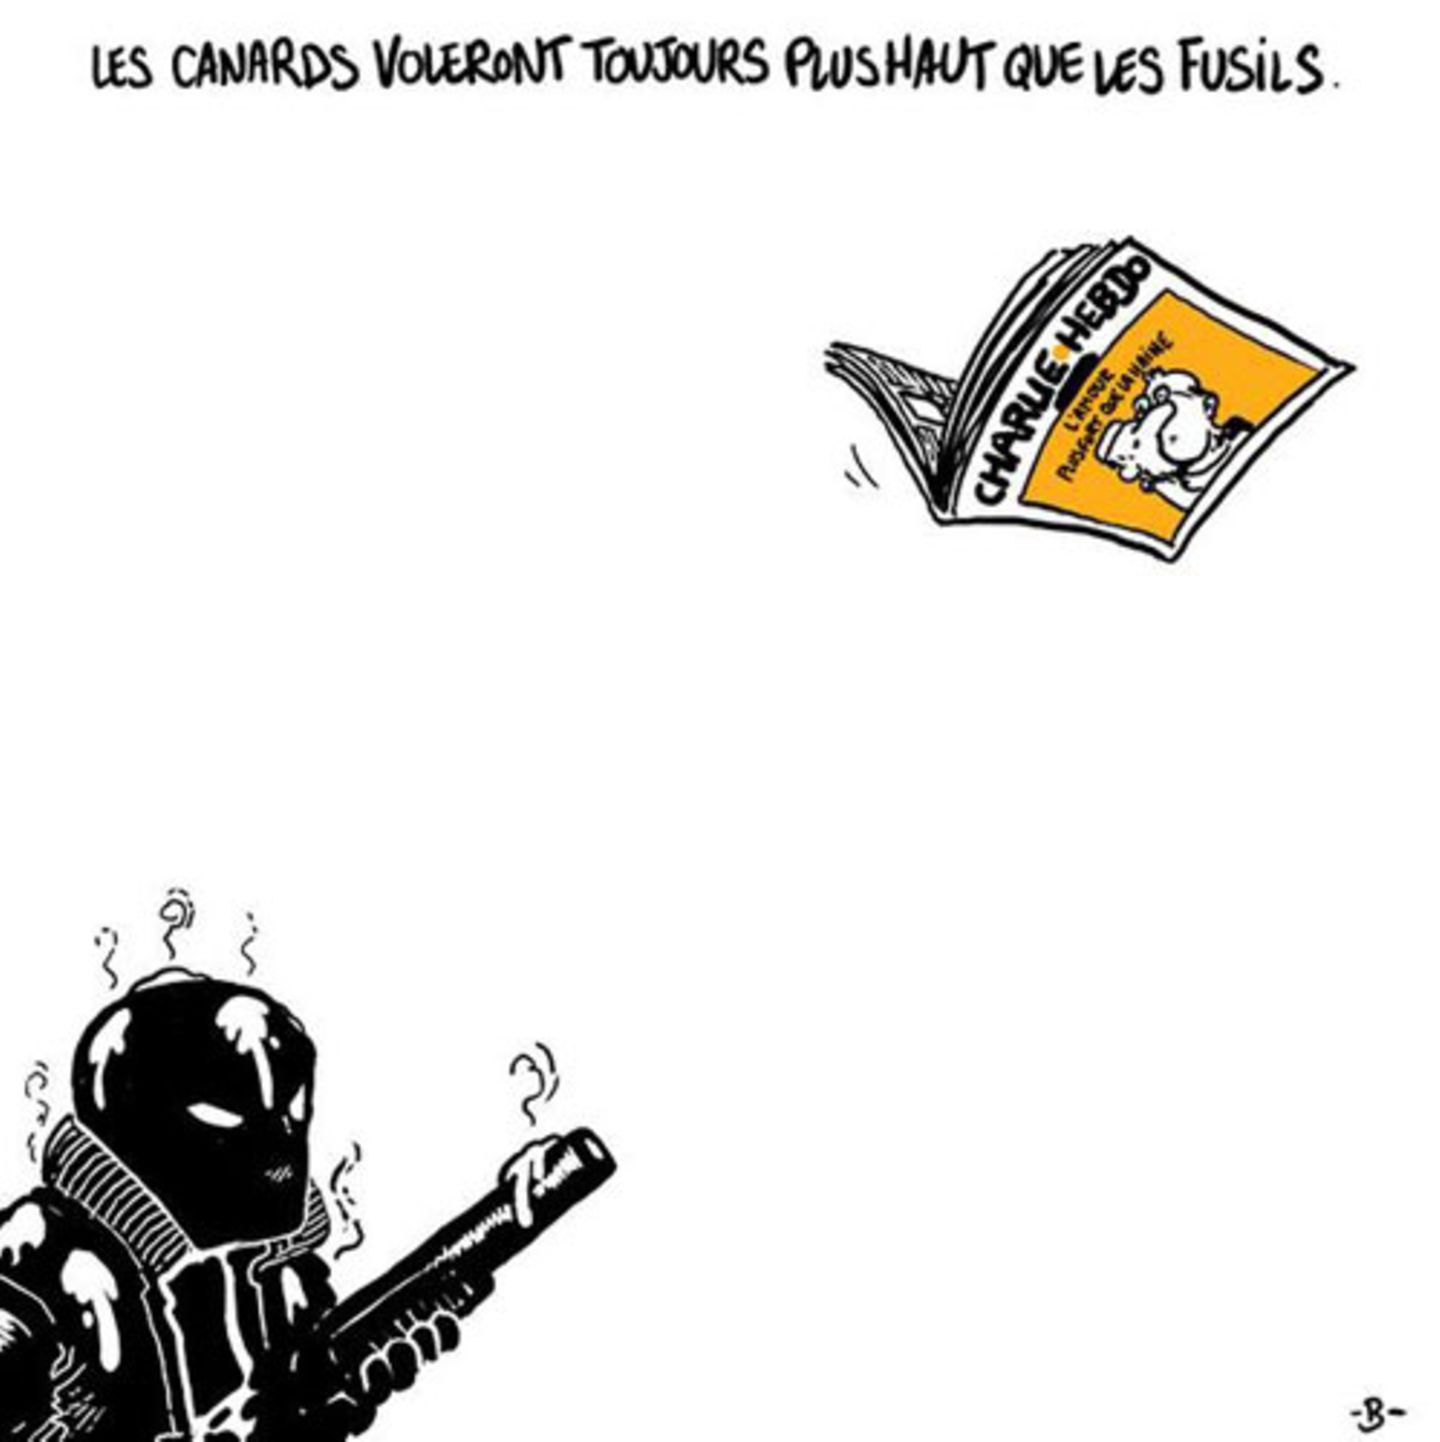 "Enten werden immer höher fliegen als Waffen", schreibt der Illustrator Boulet in seiner Zeichnung. "Canards" ist im Französischen auch ein umgangssprachliches Wort für Zeitungen.